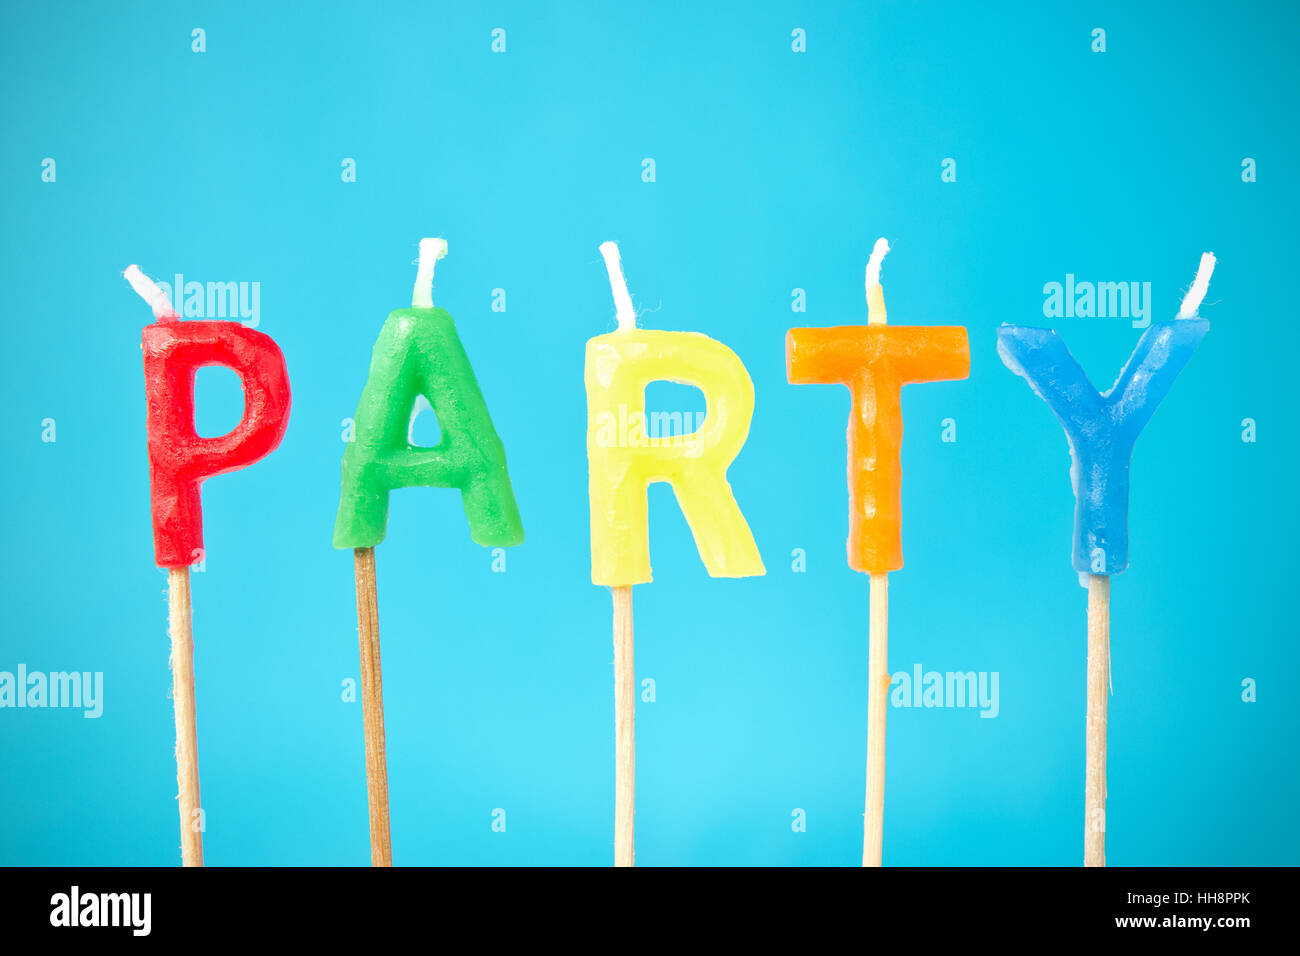 celebrate, reveling, revels, celebrates, candle, party, celebration, colorful, Stock Photo